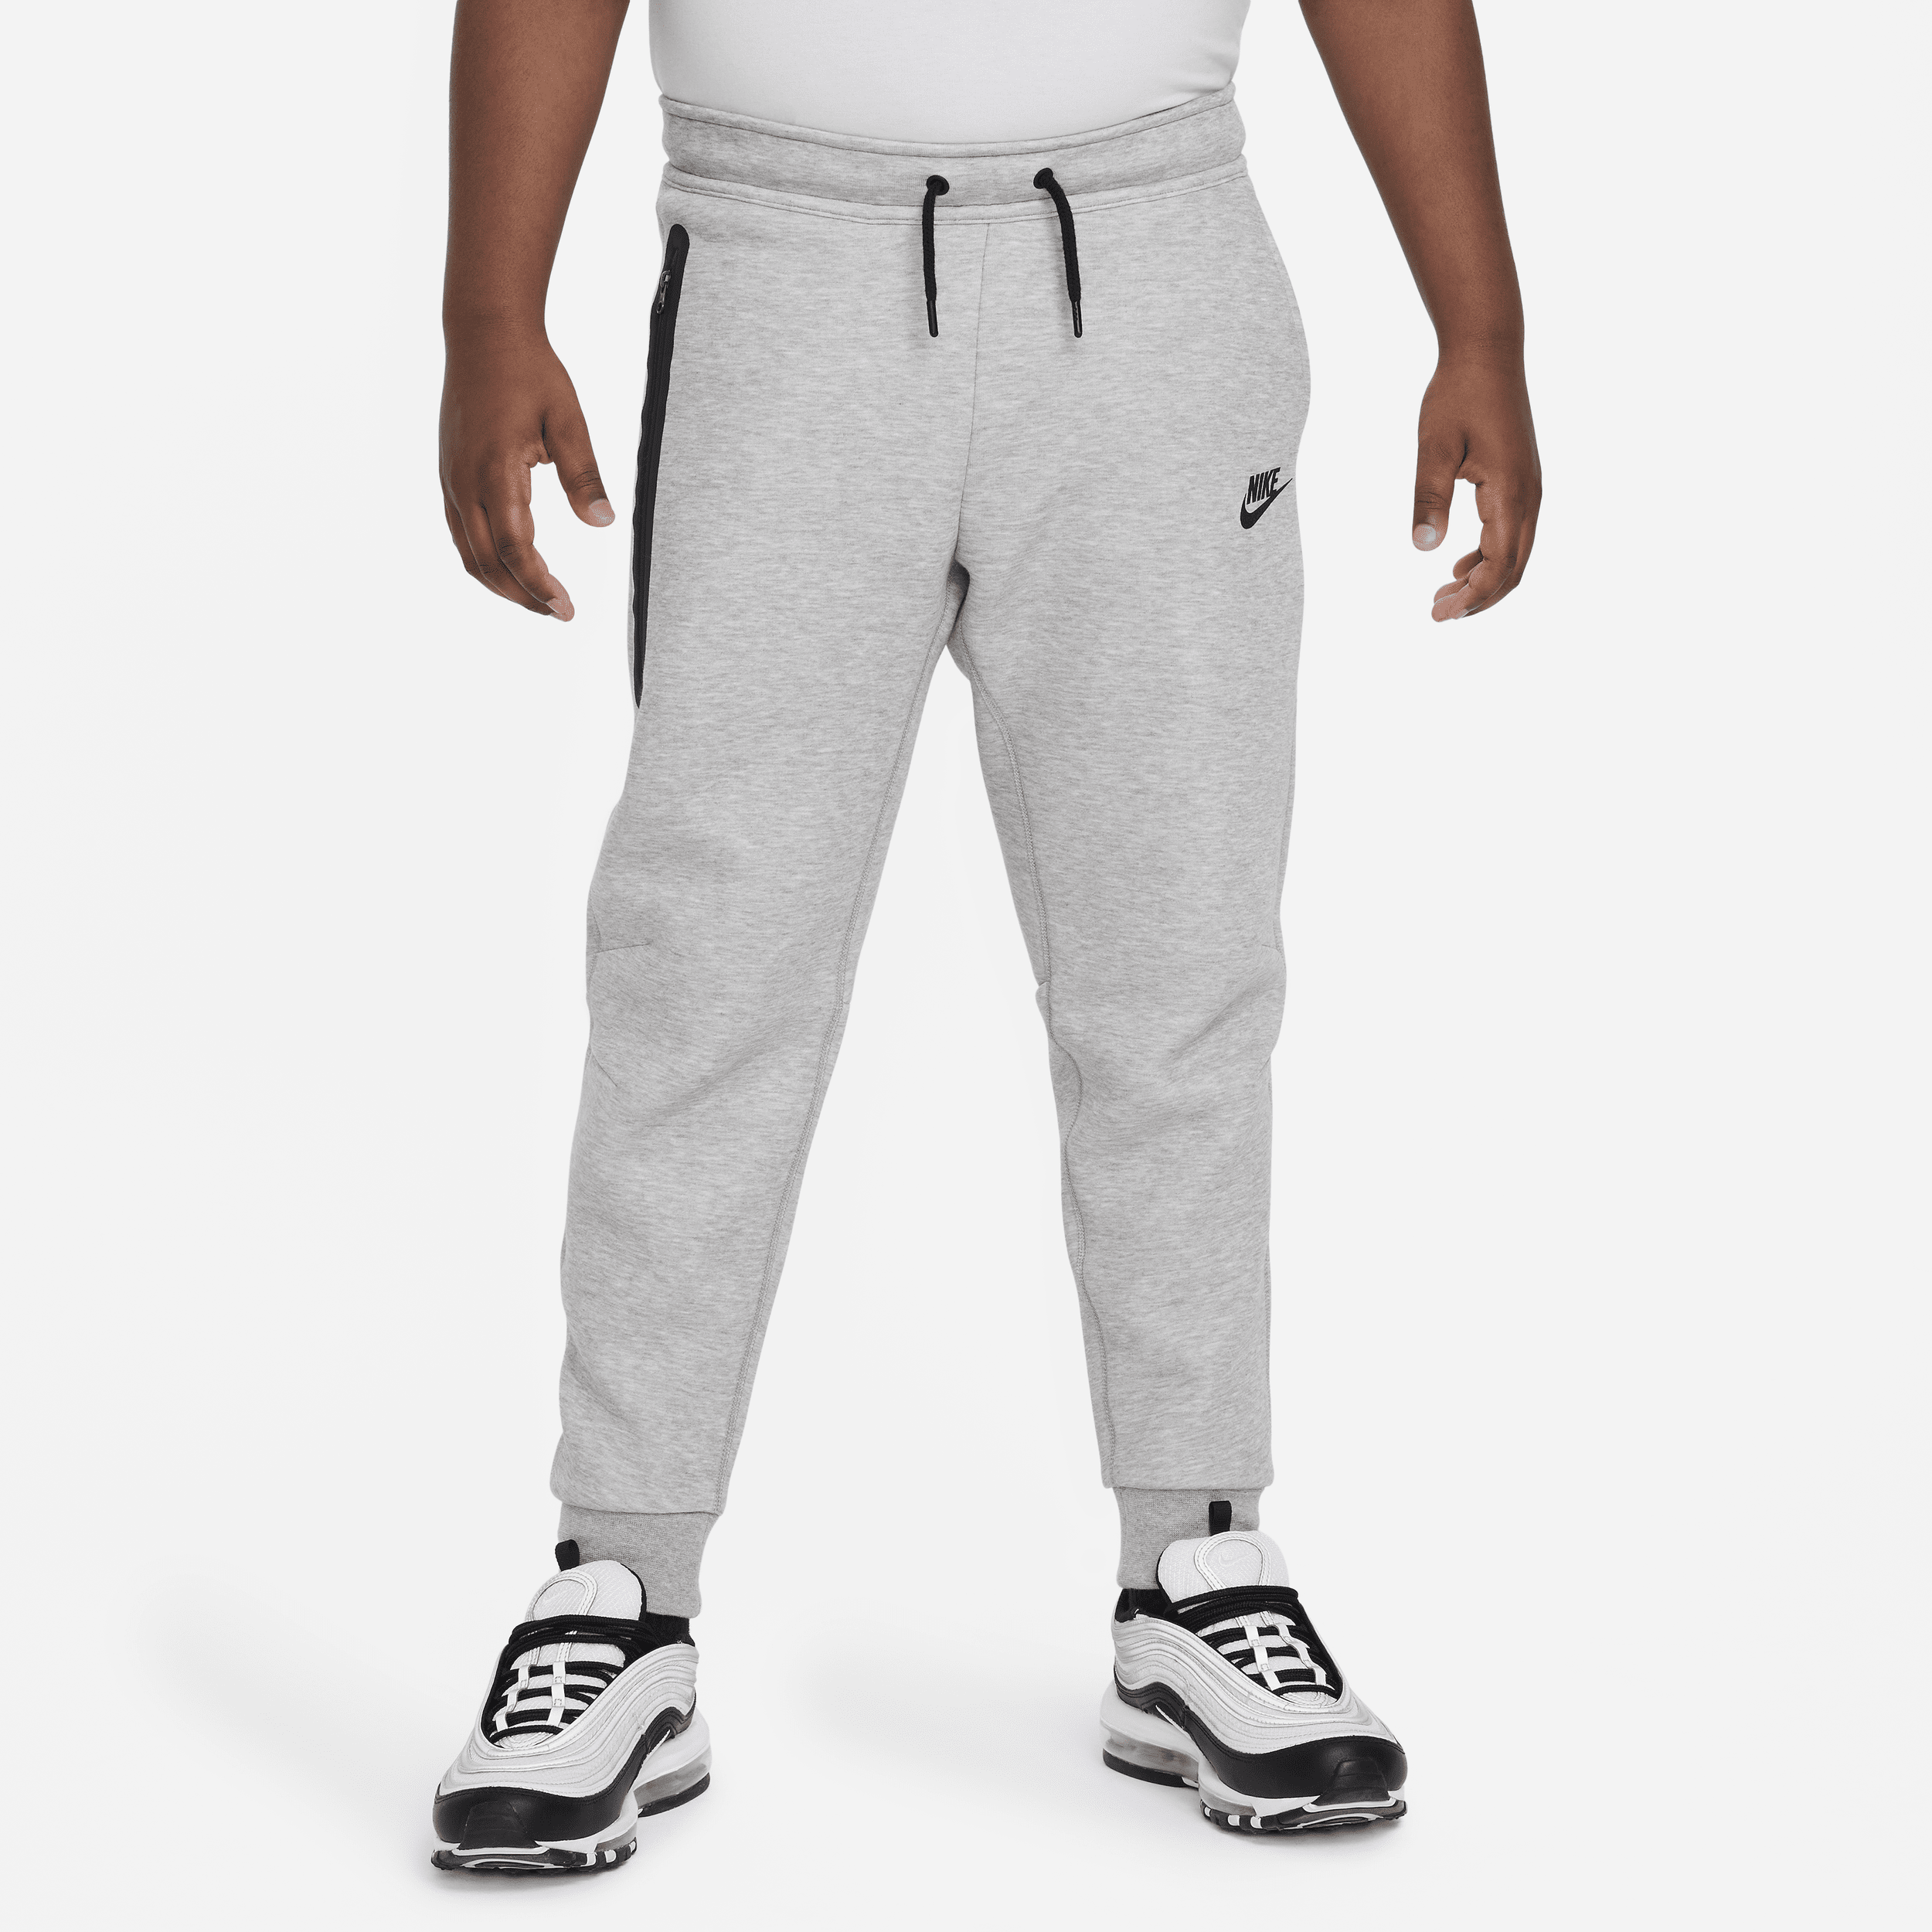 Pantaloni Nike Sportswear Tech Fleece (taglia grande) - Ragazzi - Grigio